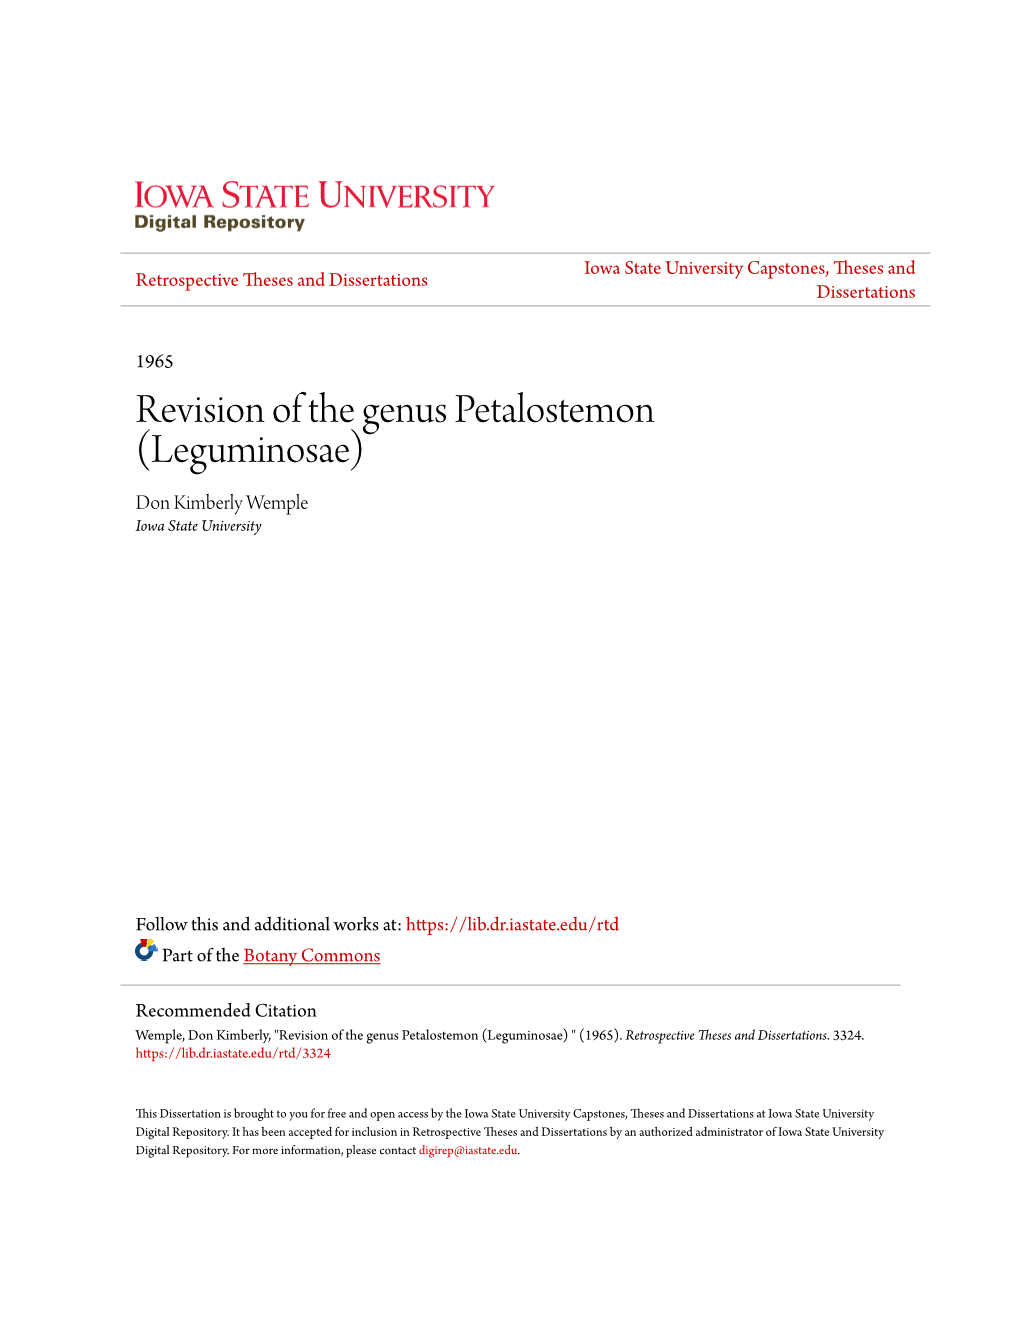 Revision of the Genus Petalostemon (Leguminosae) Don Kimberly Wemple Iowa State University